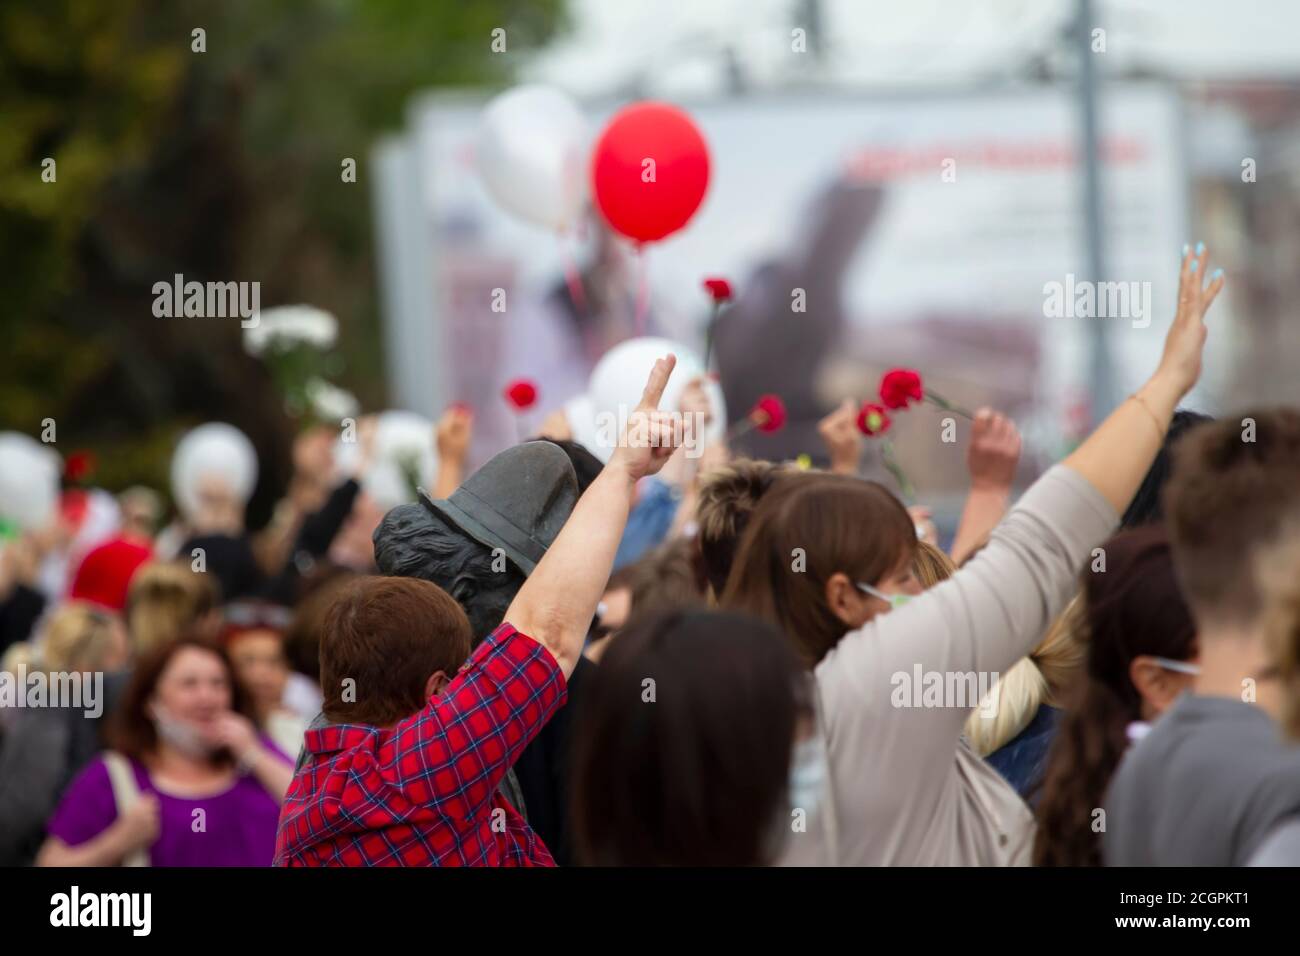 Bélarus, Gomel, 12 août 2020. Les rues de la ville. Protestation populaire contre Lukashenka. Rassemblement pacifique en Biélorussie contre le dictateur. Femmes a Banque D'Images